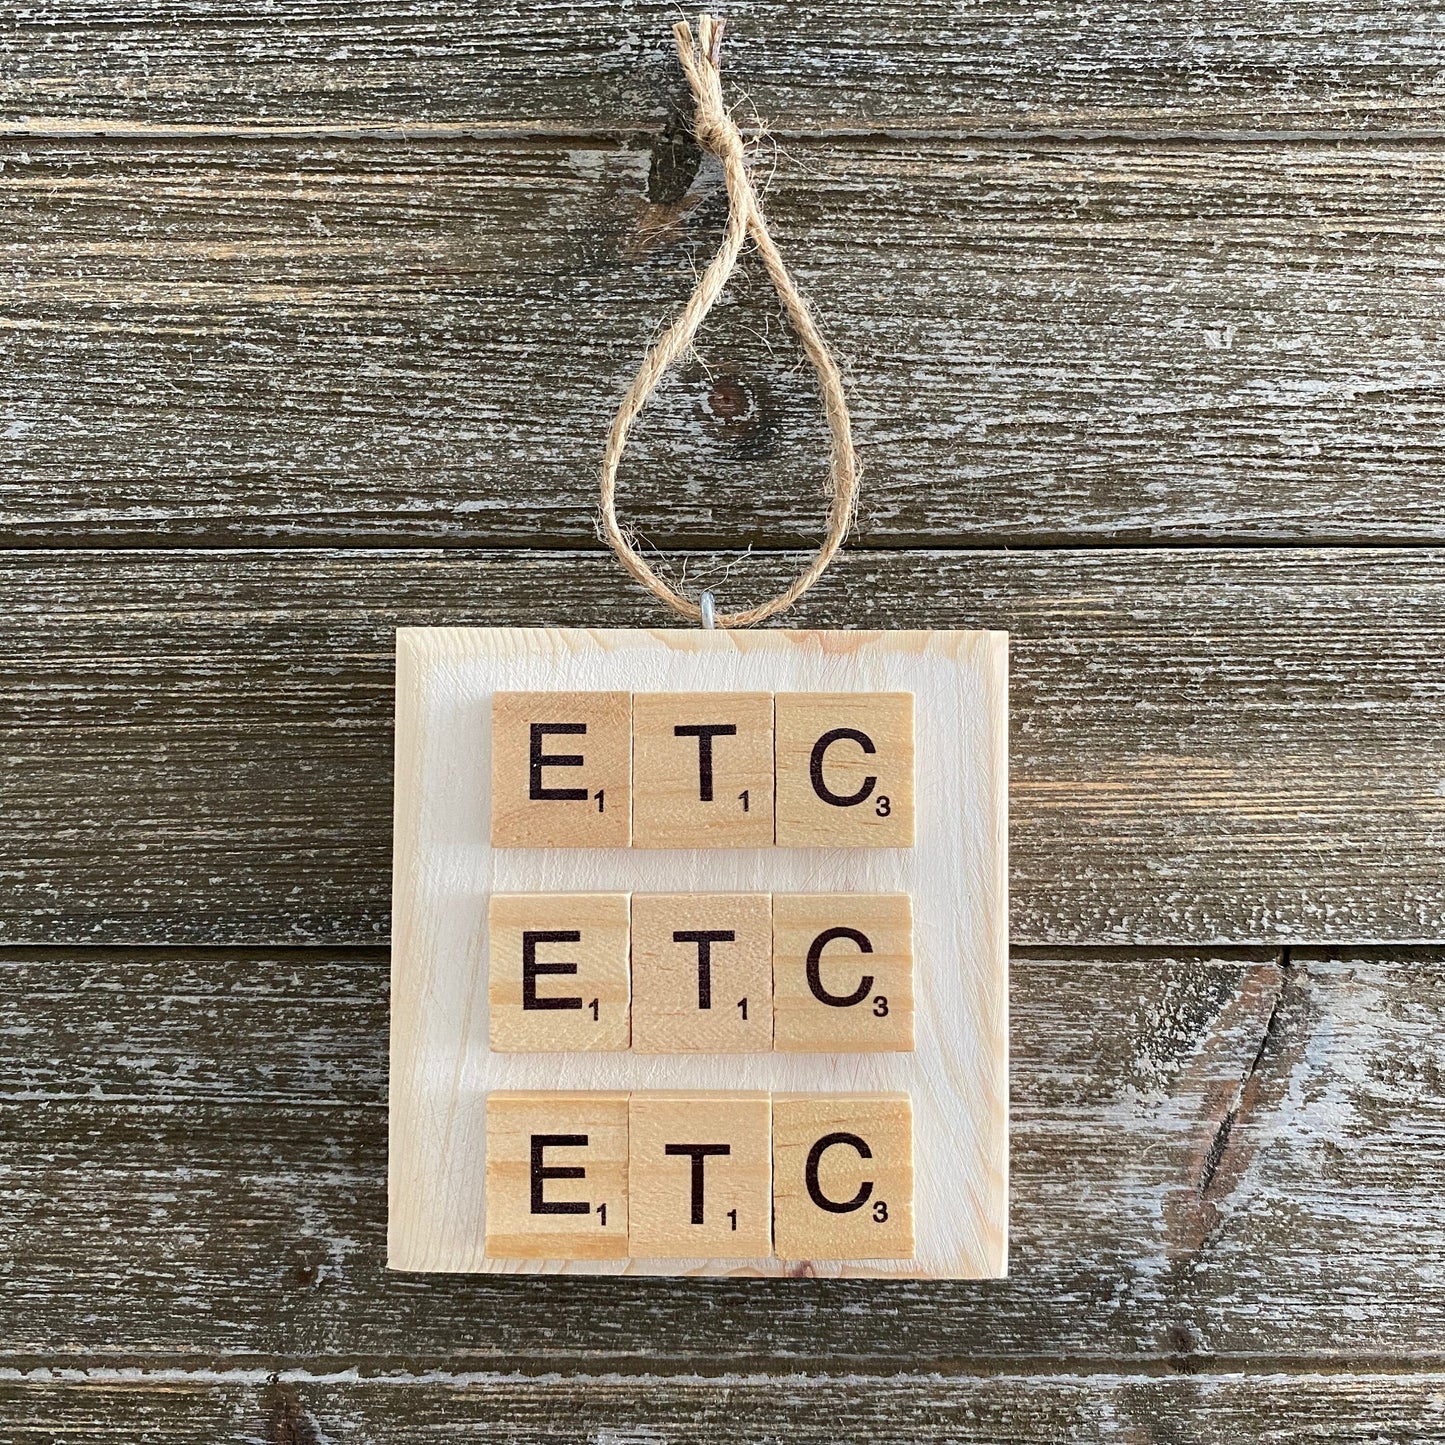 Funny Ornament - ETC ETC ETC